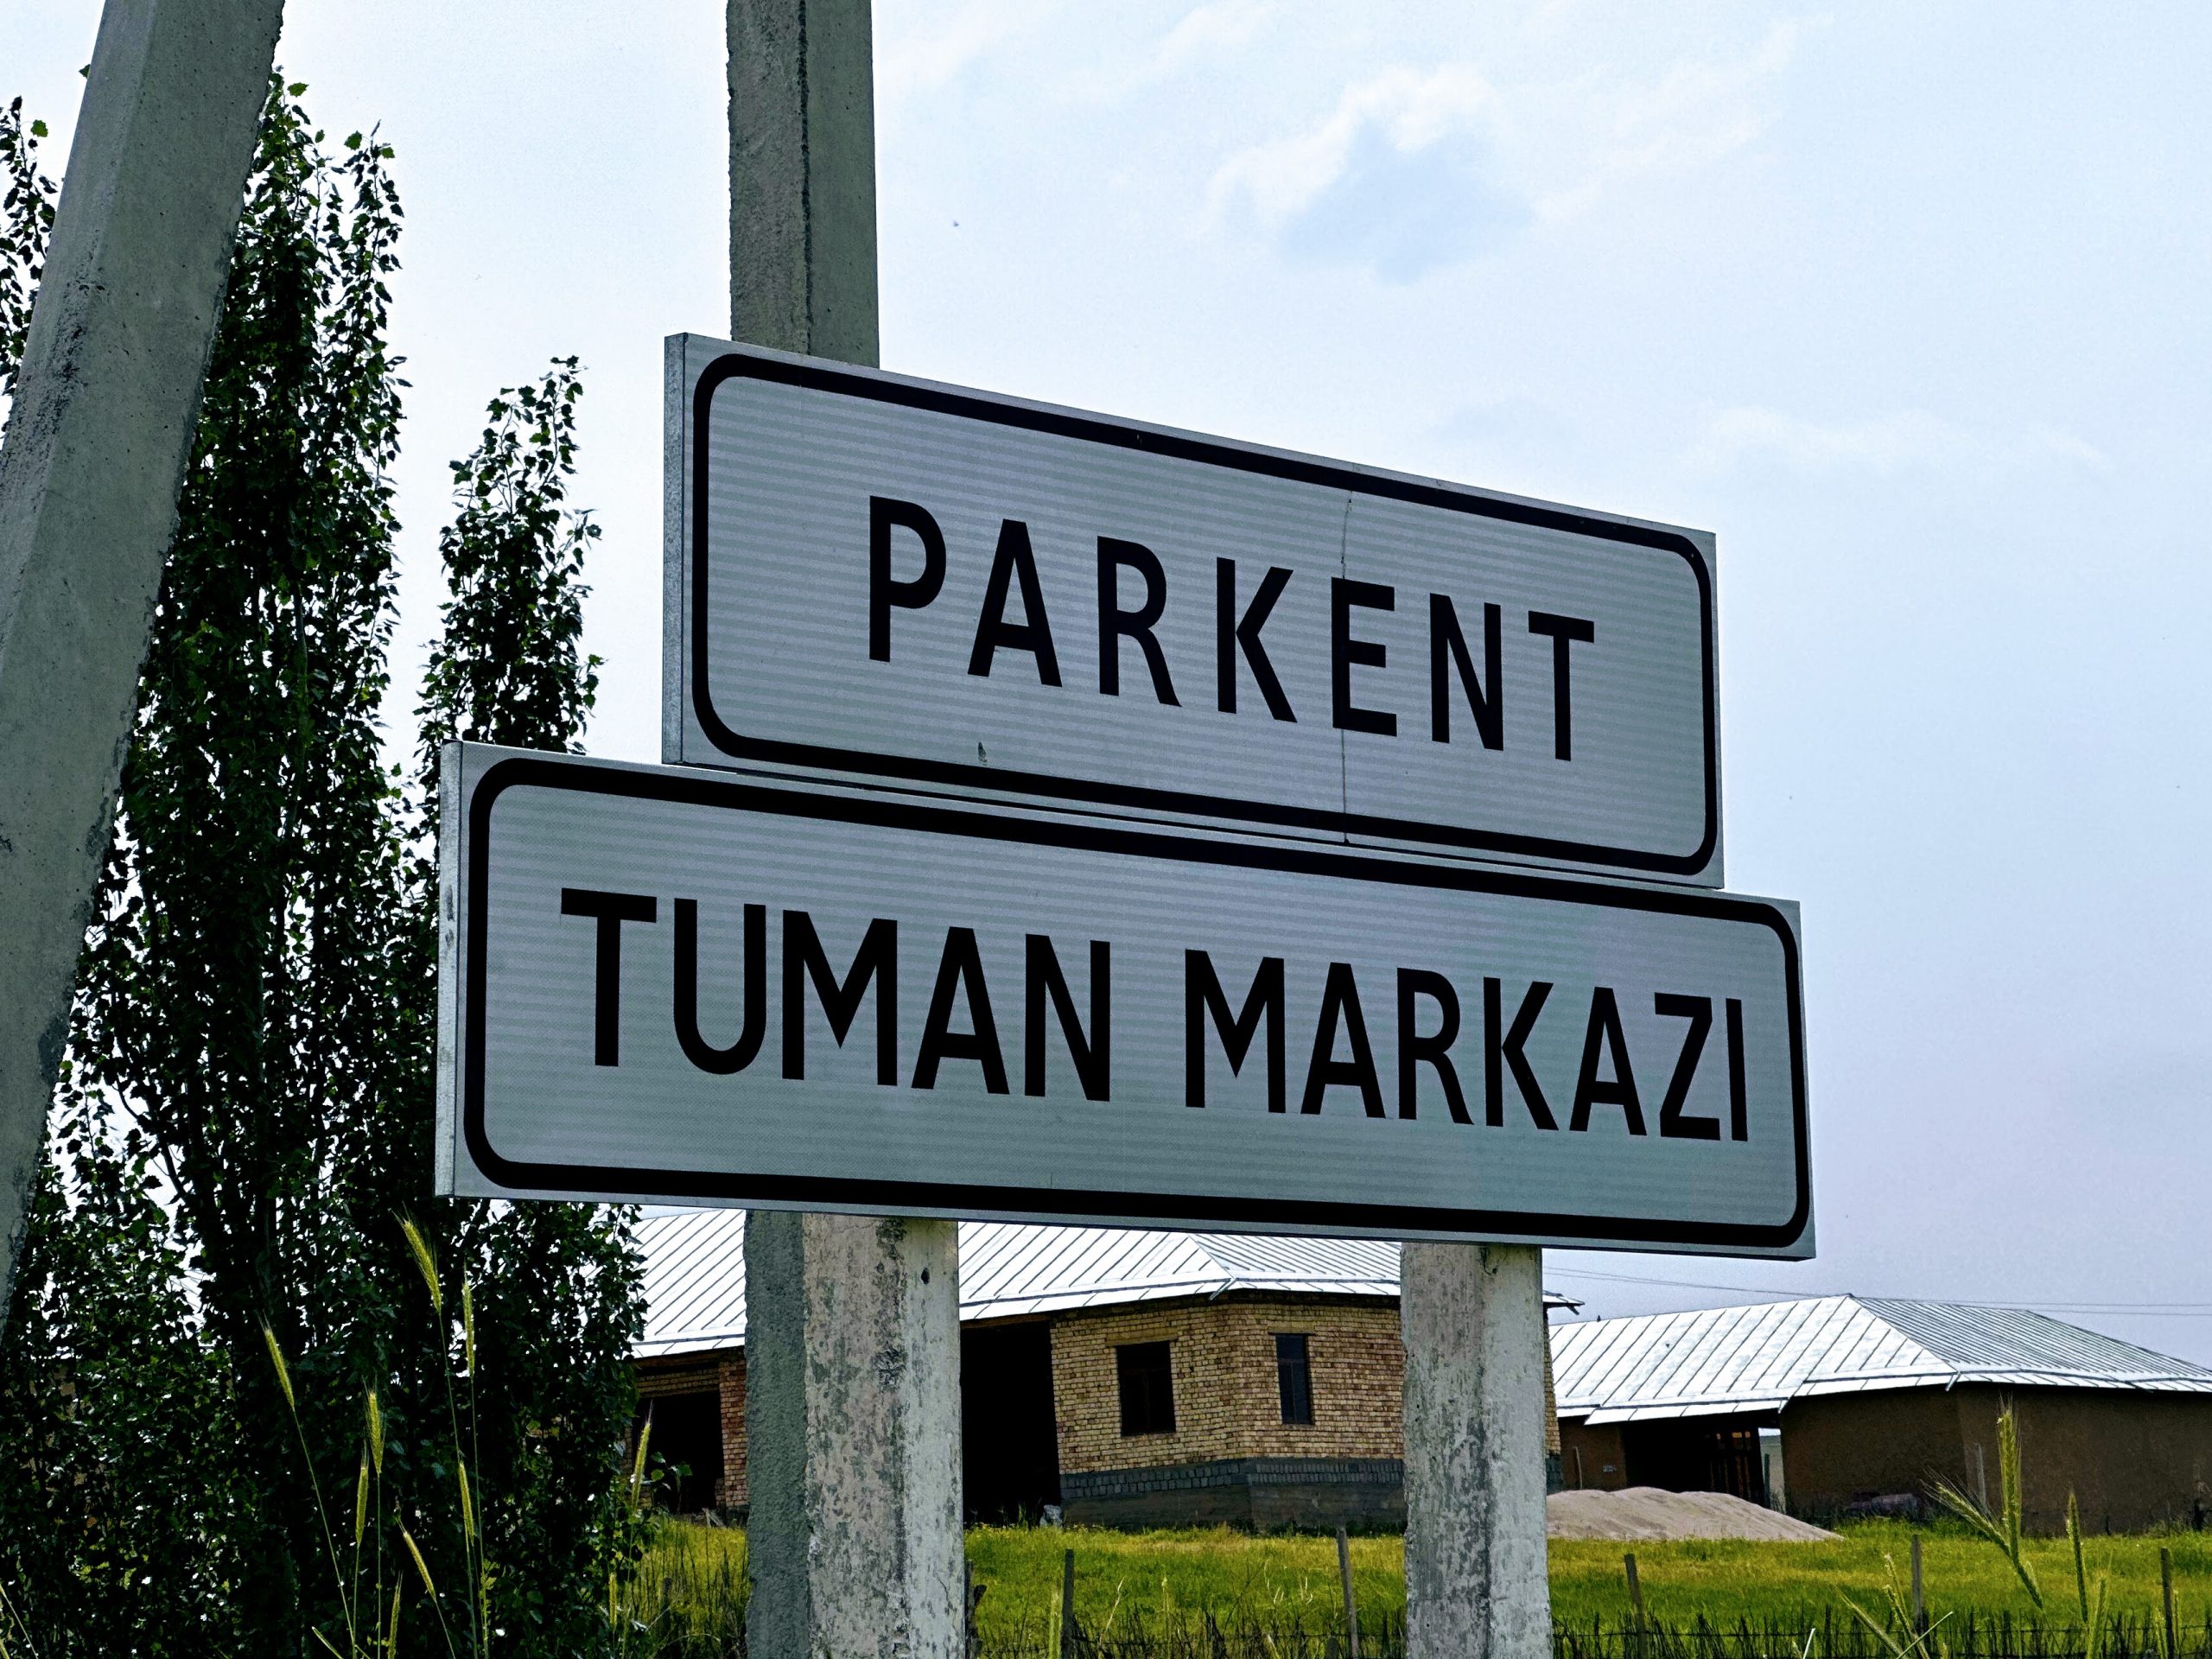 Въезд в город, в котором скорость ограничена 60 км/ч обозначен дополнительной табличкой "Tuman Markazi" - районный центр / Фото: Автострада